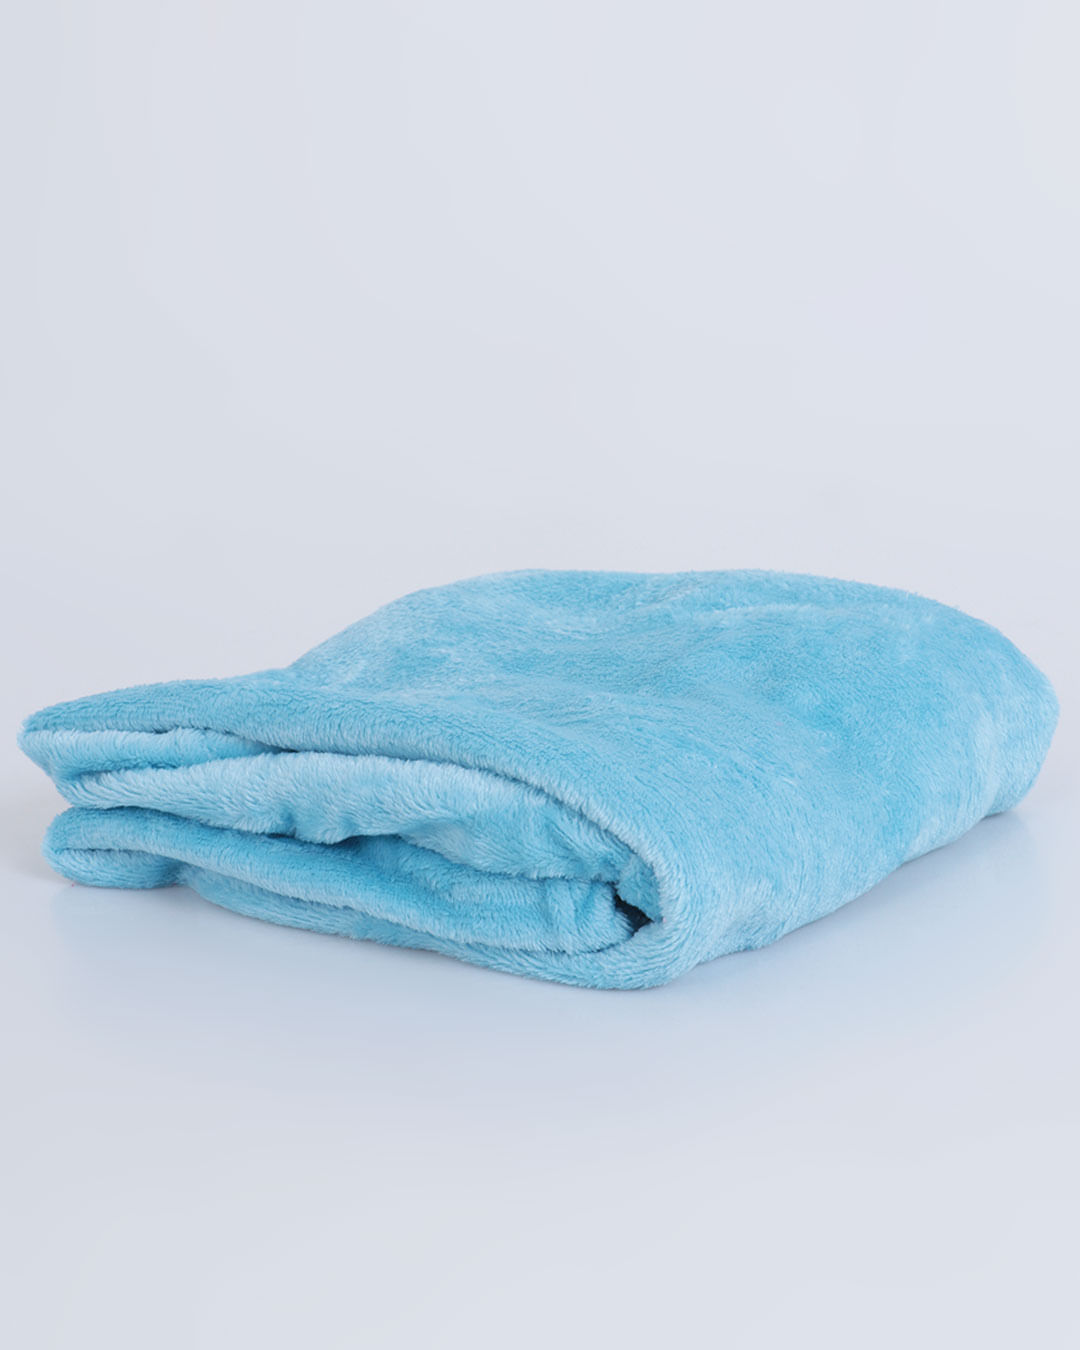 Cobertor-de-Bebe-Flannel-Lisa-Arte-e-Cazza-Azul-Claro